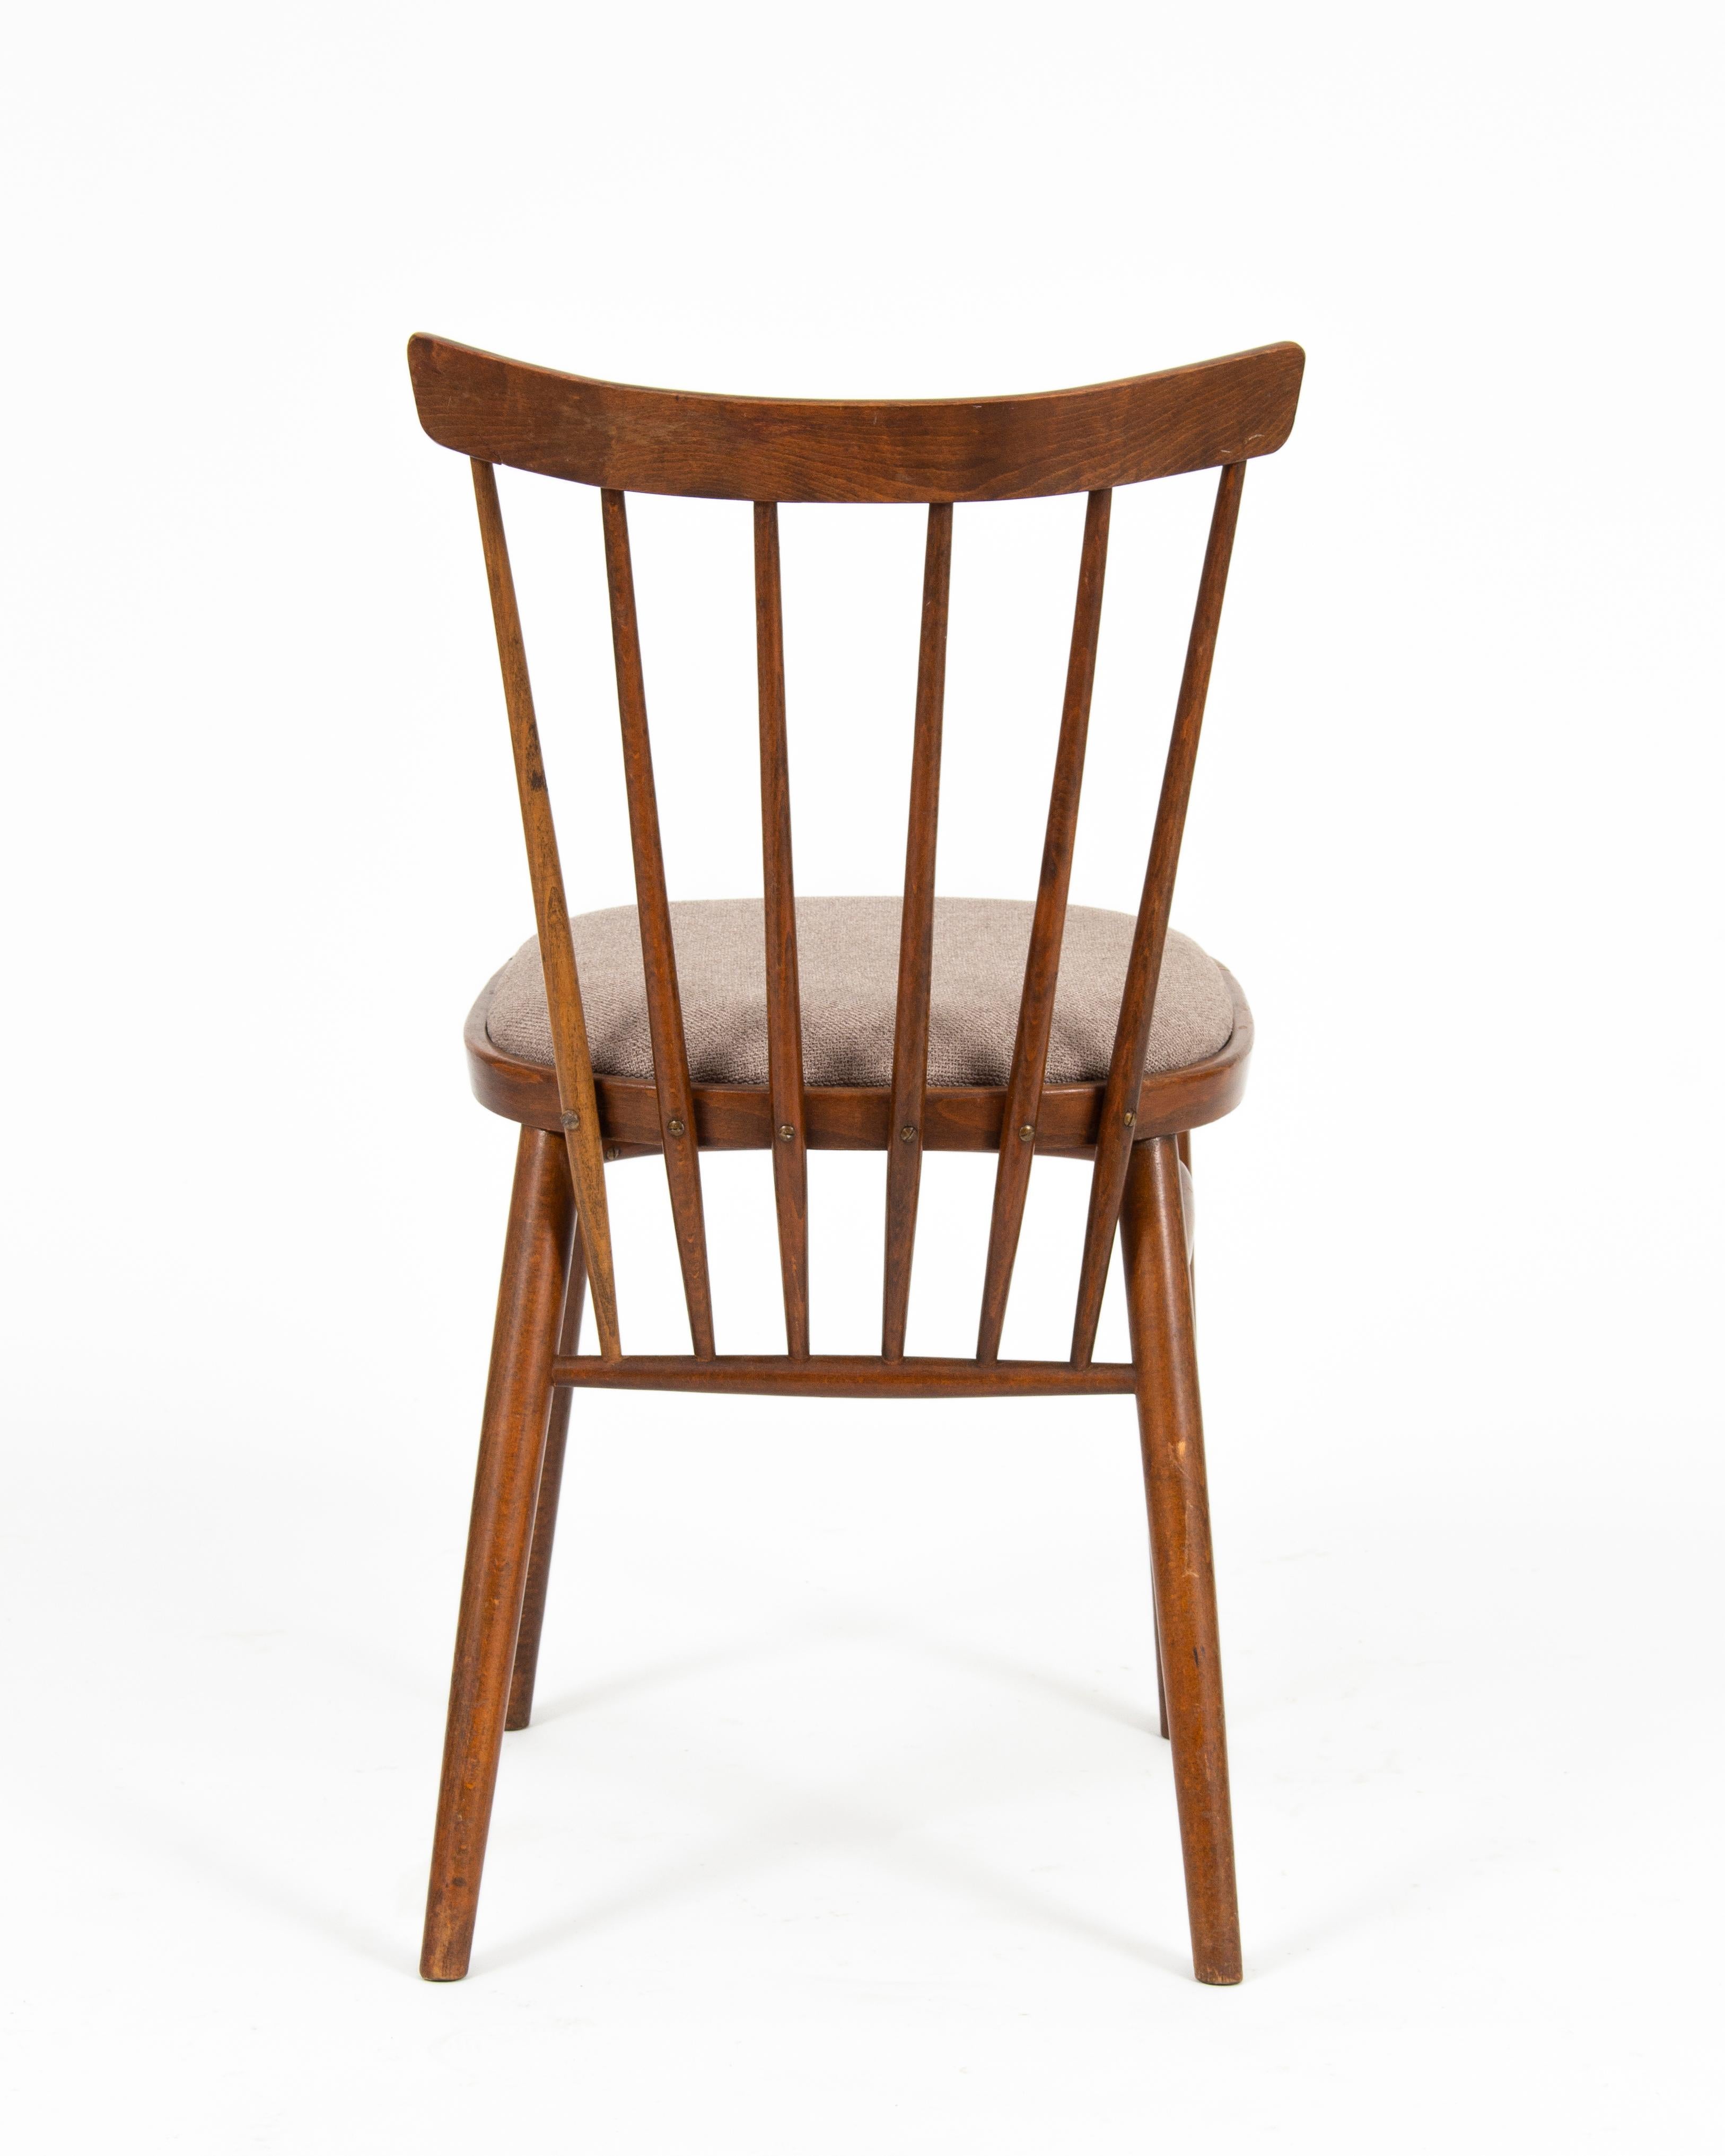 Antonín Šuman Tatra Czechoslovakian Mid-Century Chairs, 1960s, '4 Pieces' For Sale 2